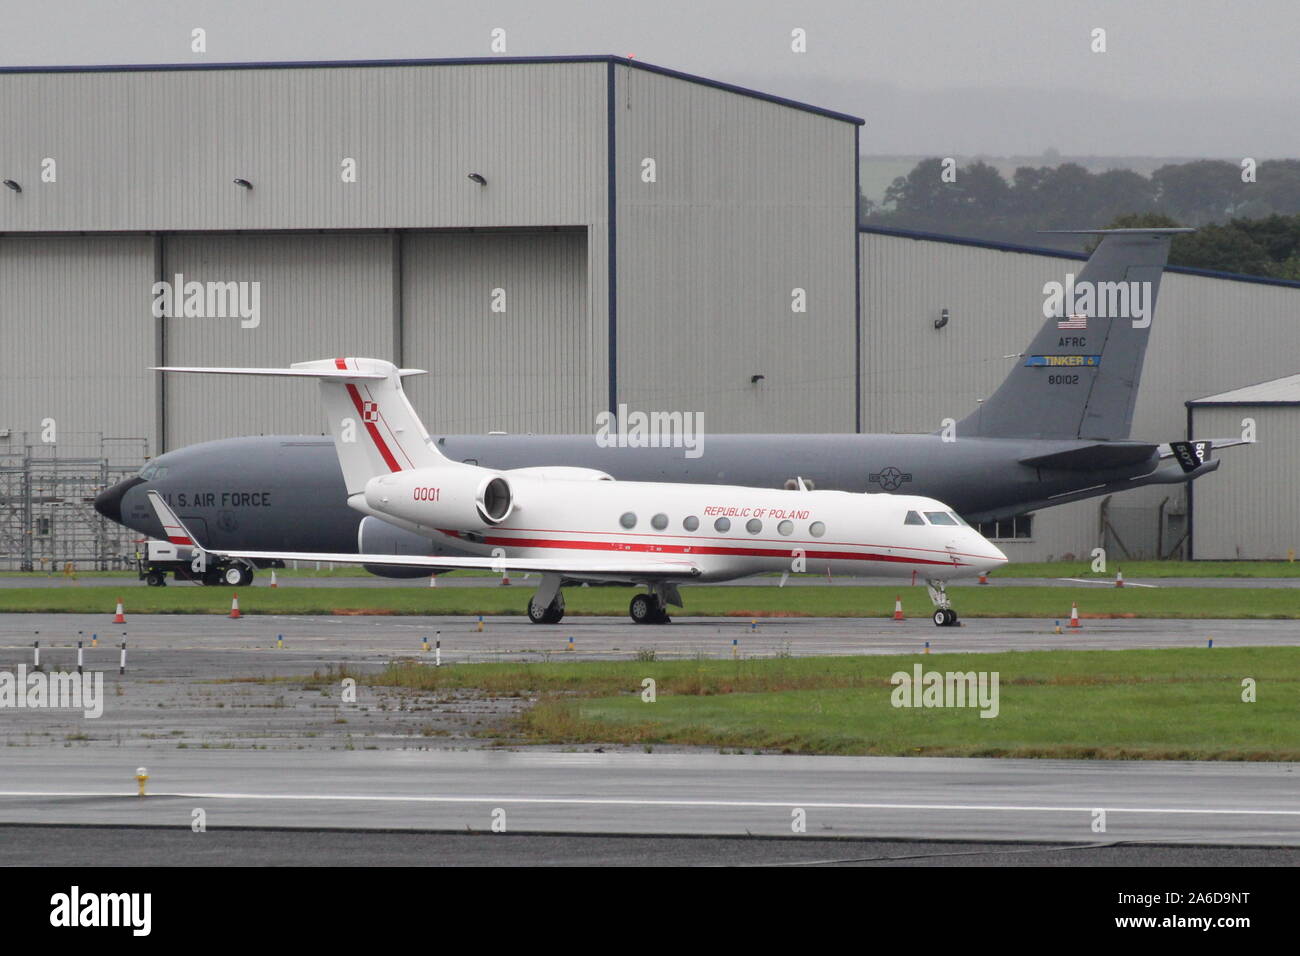 0001, uno dei due Gulfstream Aerospace G550 trasporto VIP degli aeromobili in servizio con il polacco della Air Force, a Prestwick International Airport in Ayrshire. Foto Stock